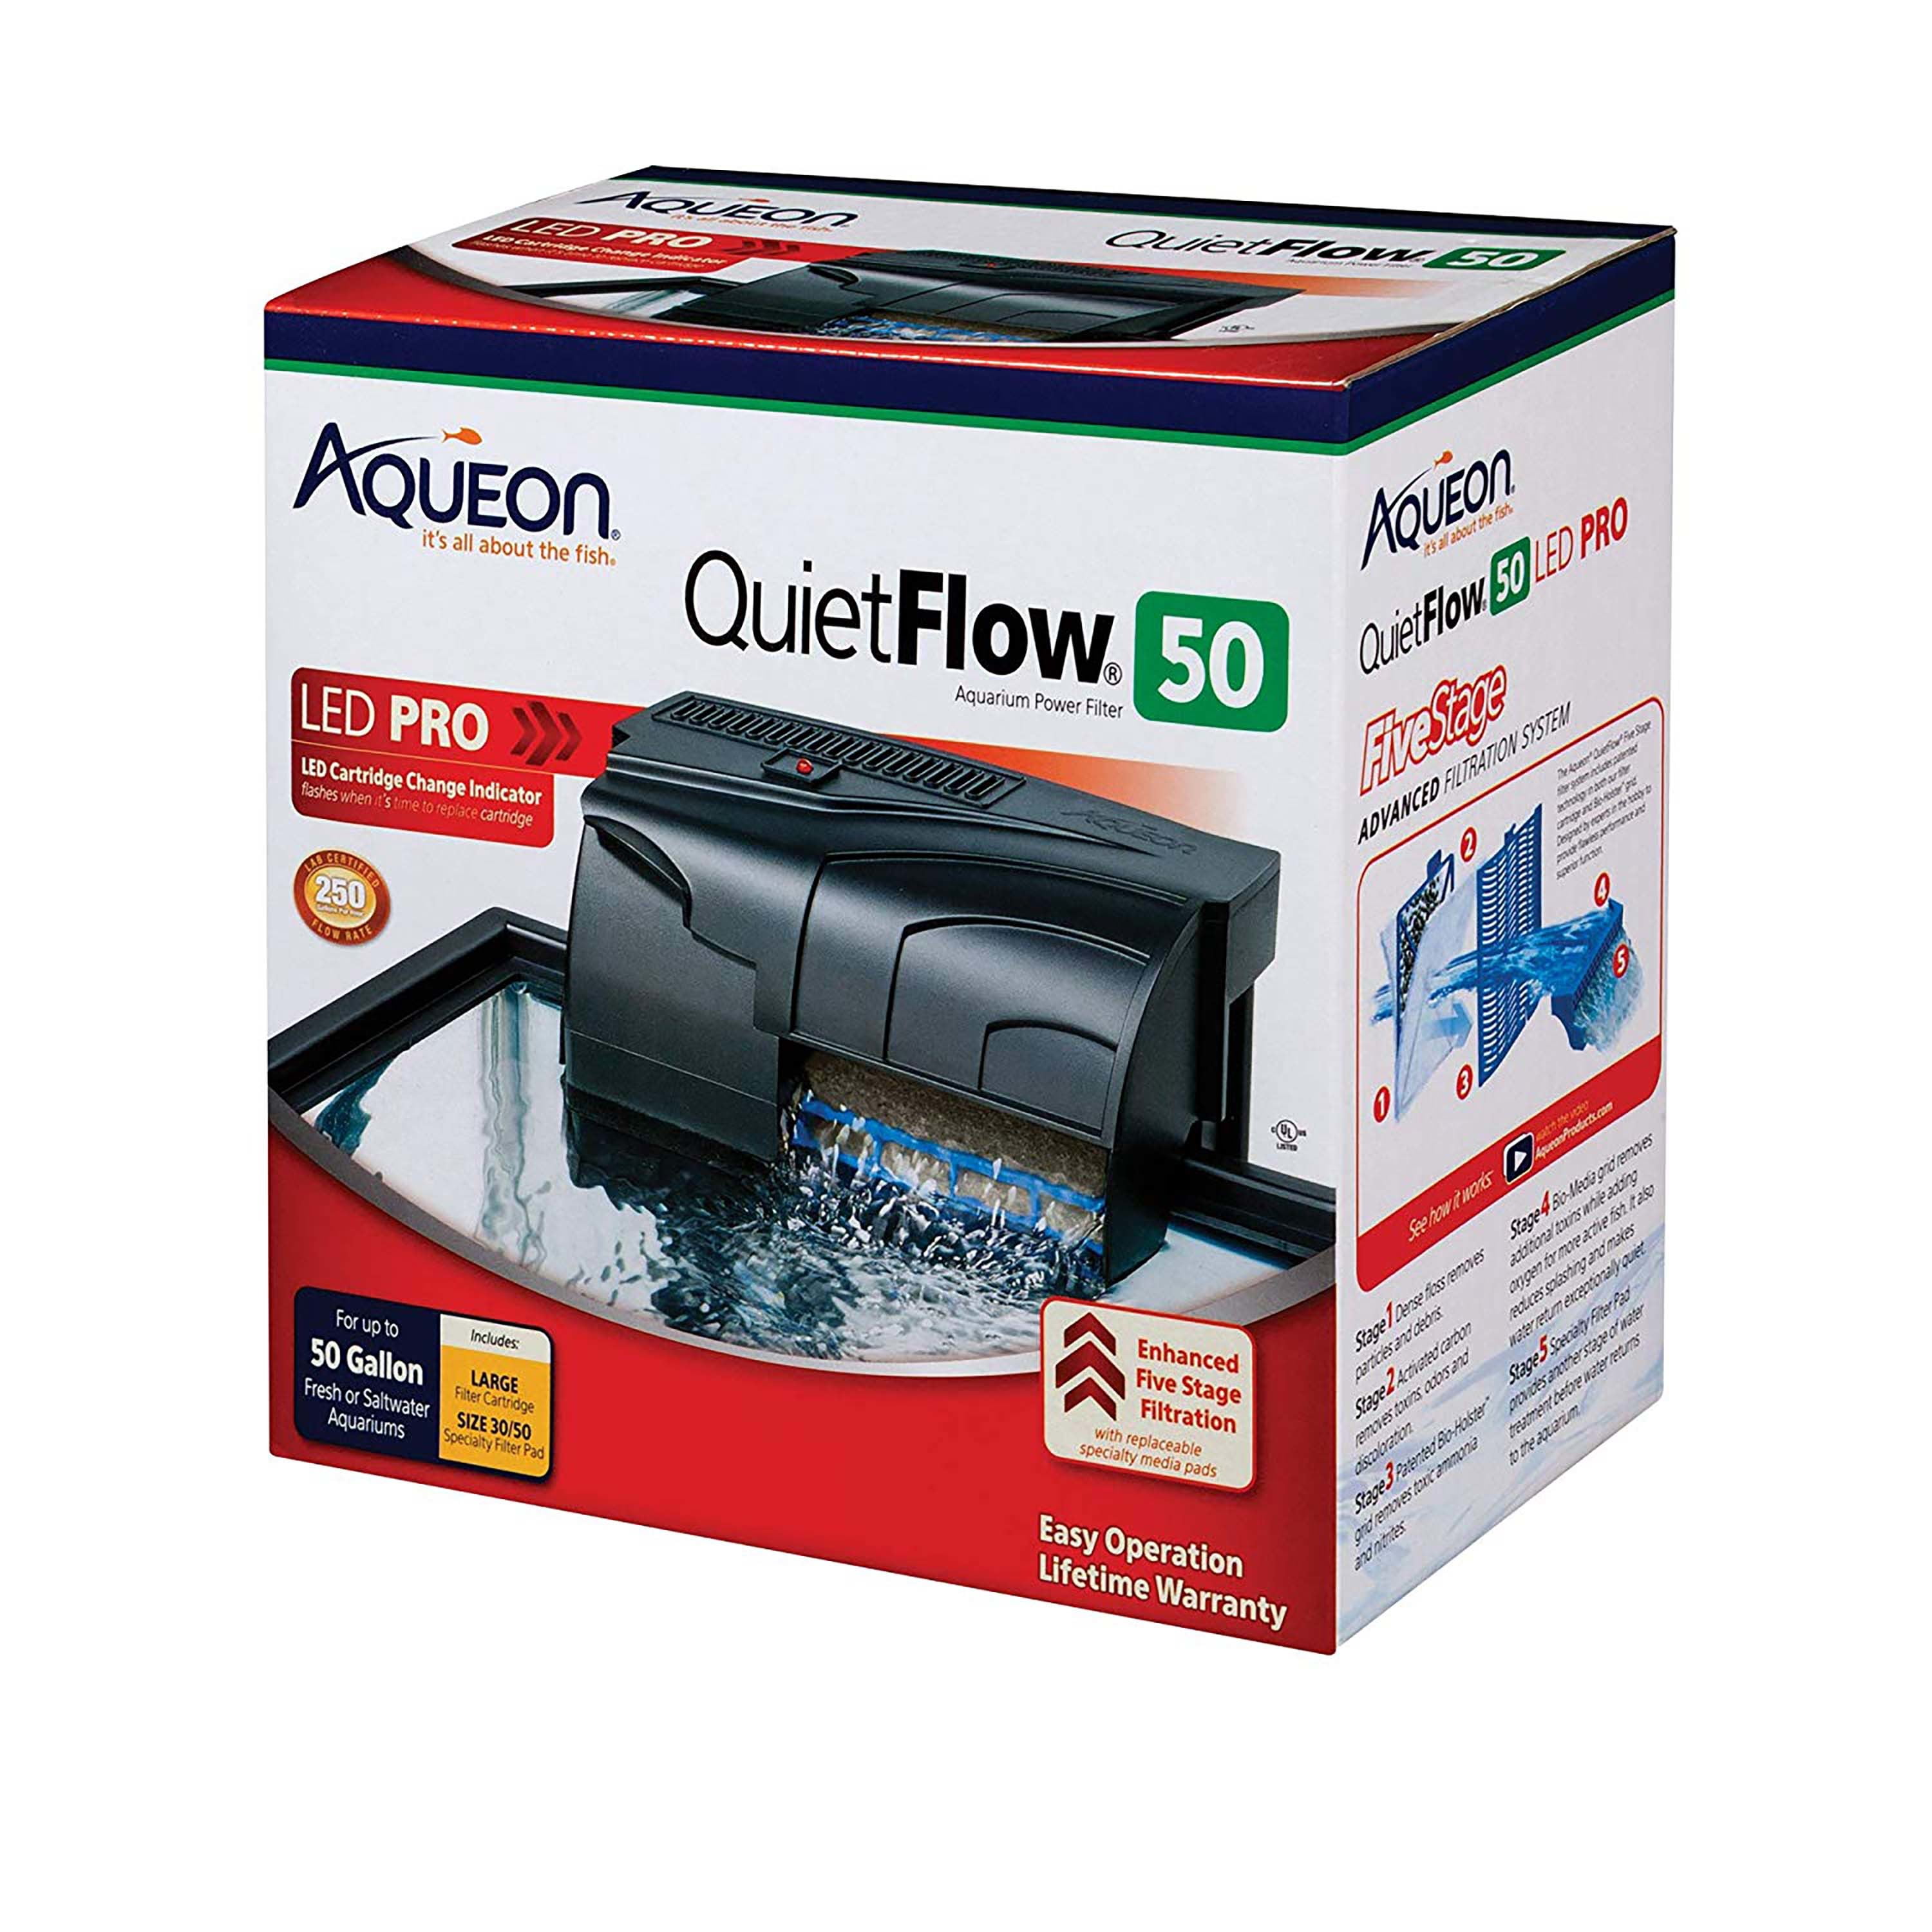 Aqueon QuietFlow Aquarium Filter, Size 50 - Walmart.com